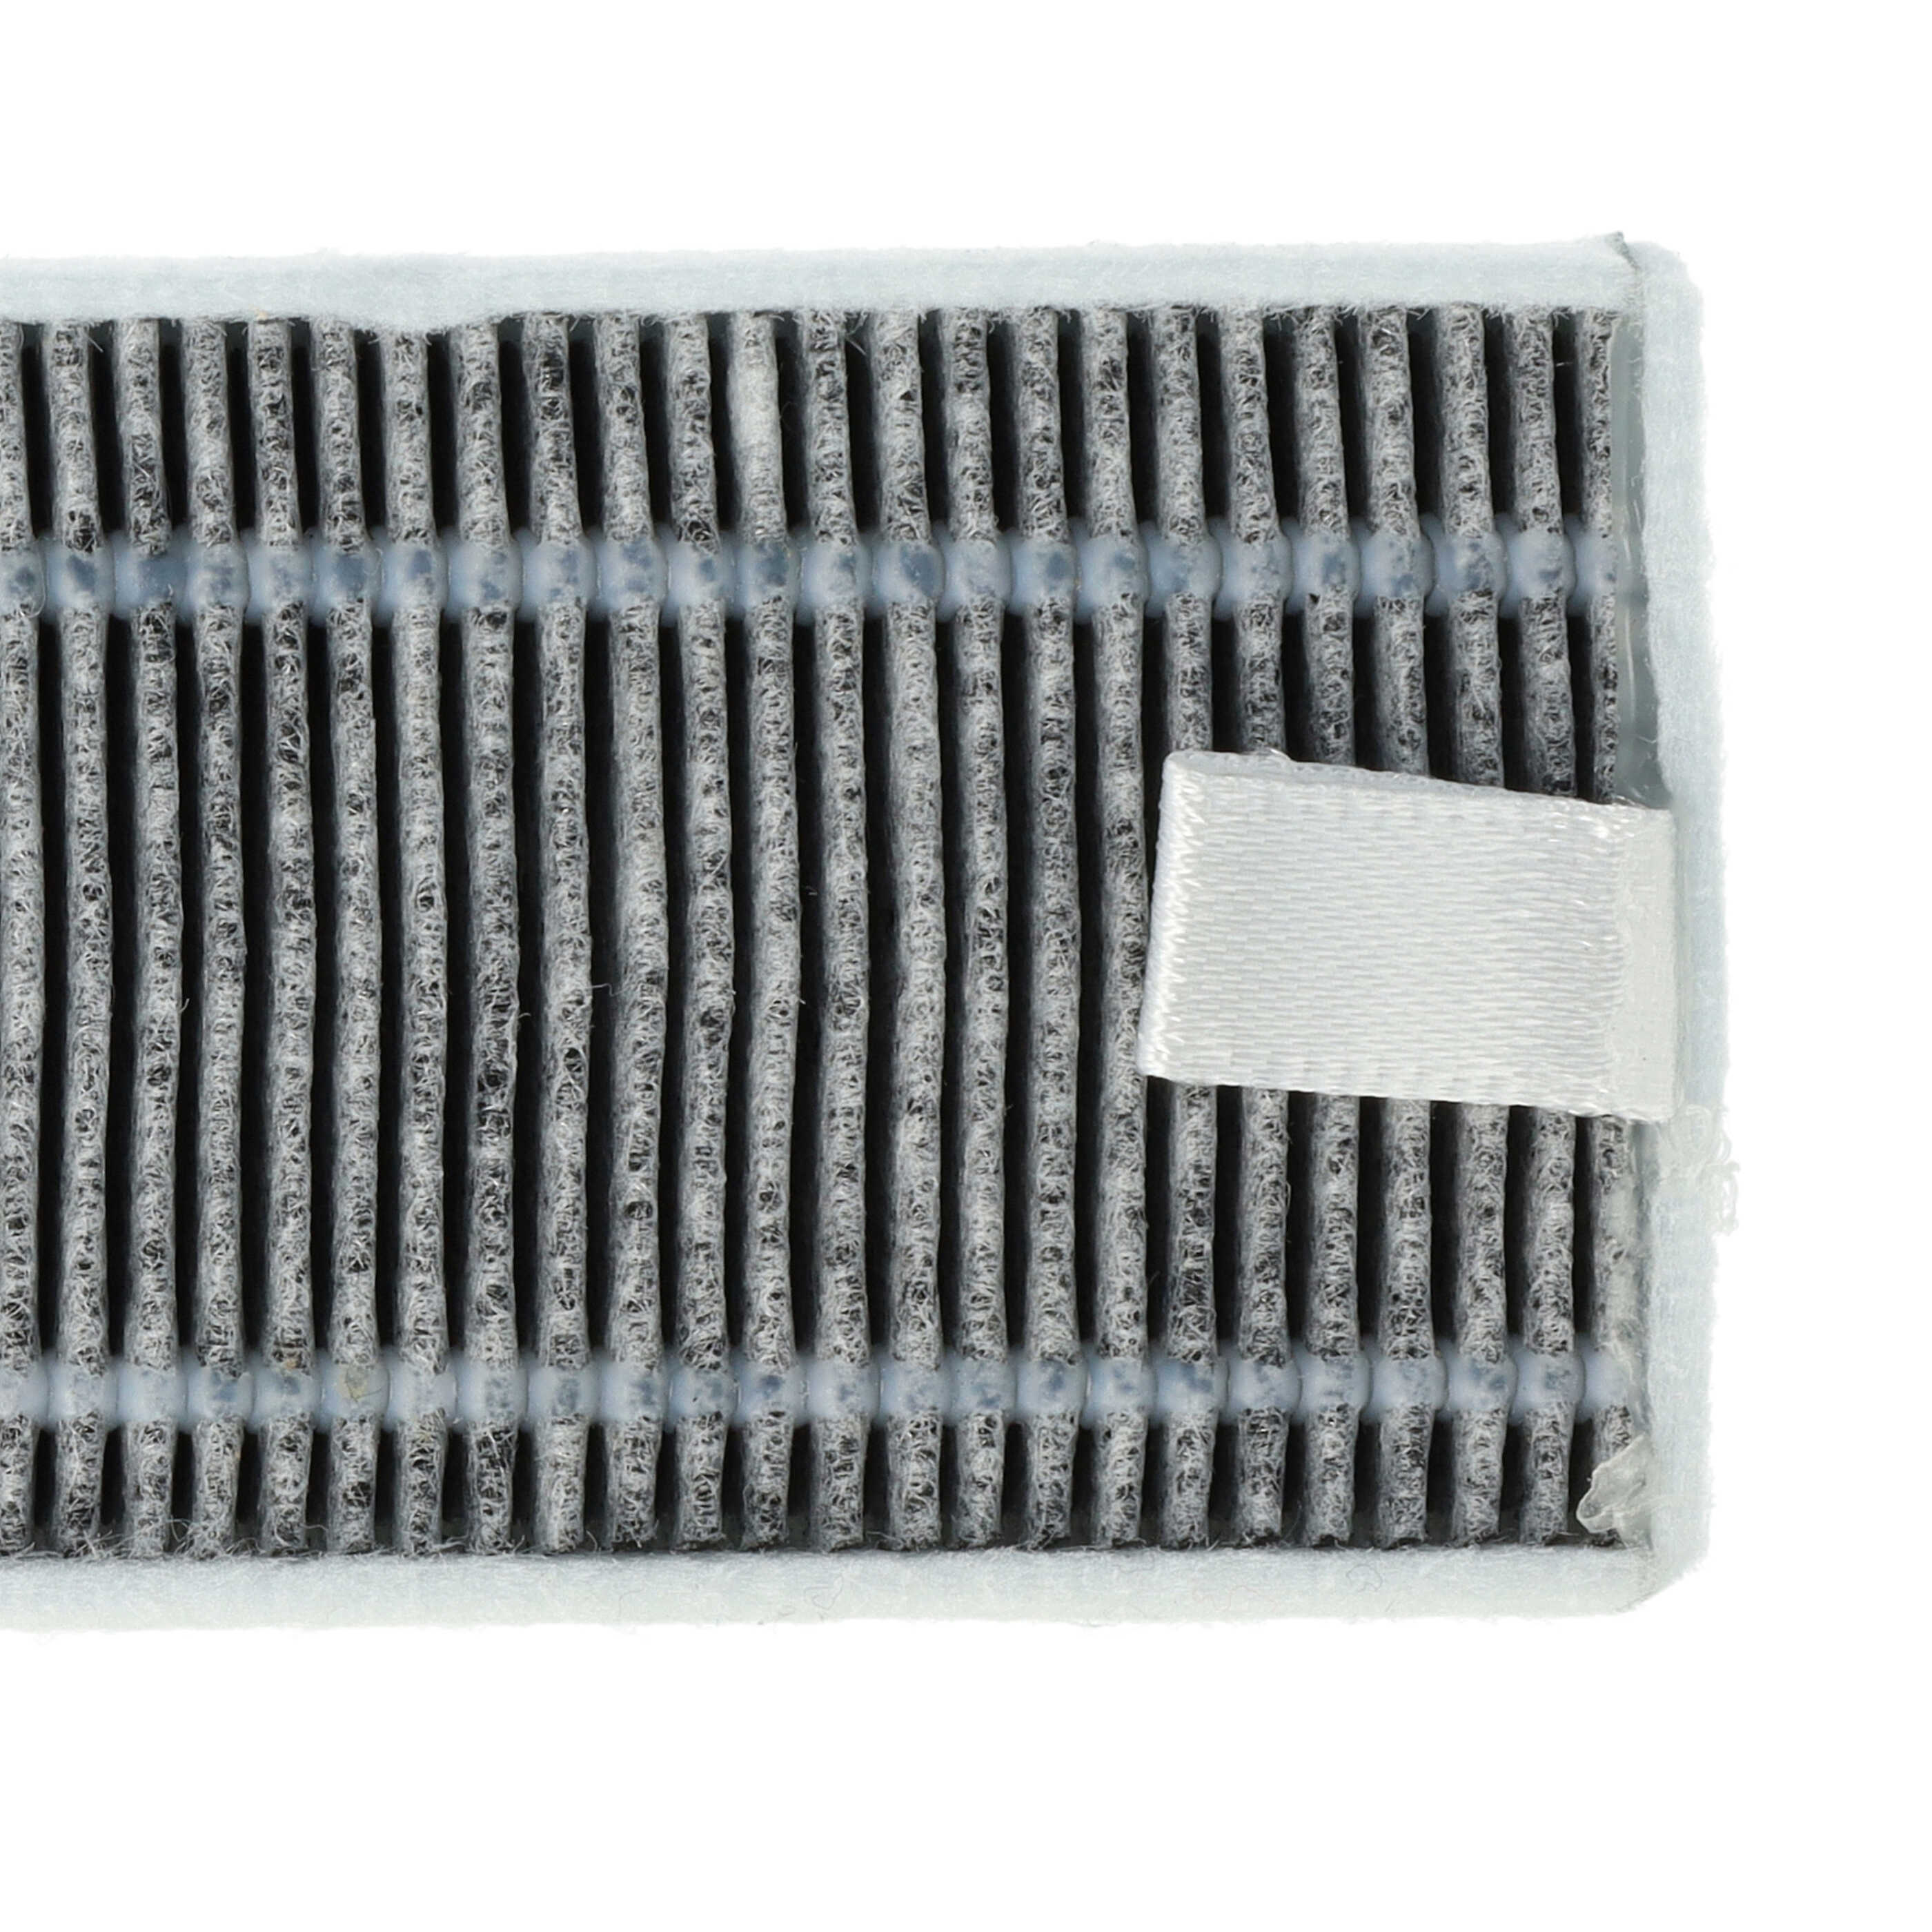 2x filtro carbón activo para robot aspirador Proscenic, Cecotec, Xiaomi M7 - 13 x 4 x 1 cm